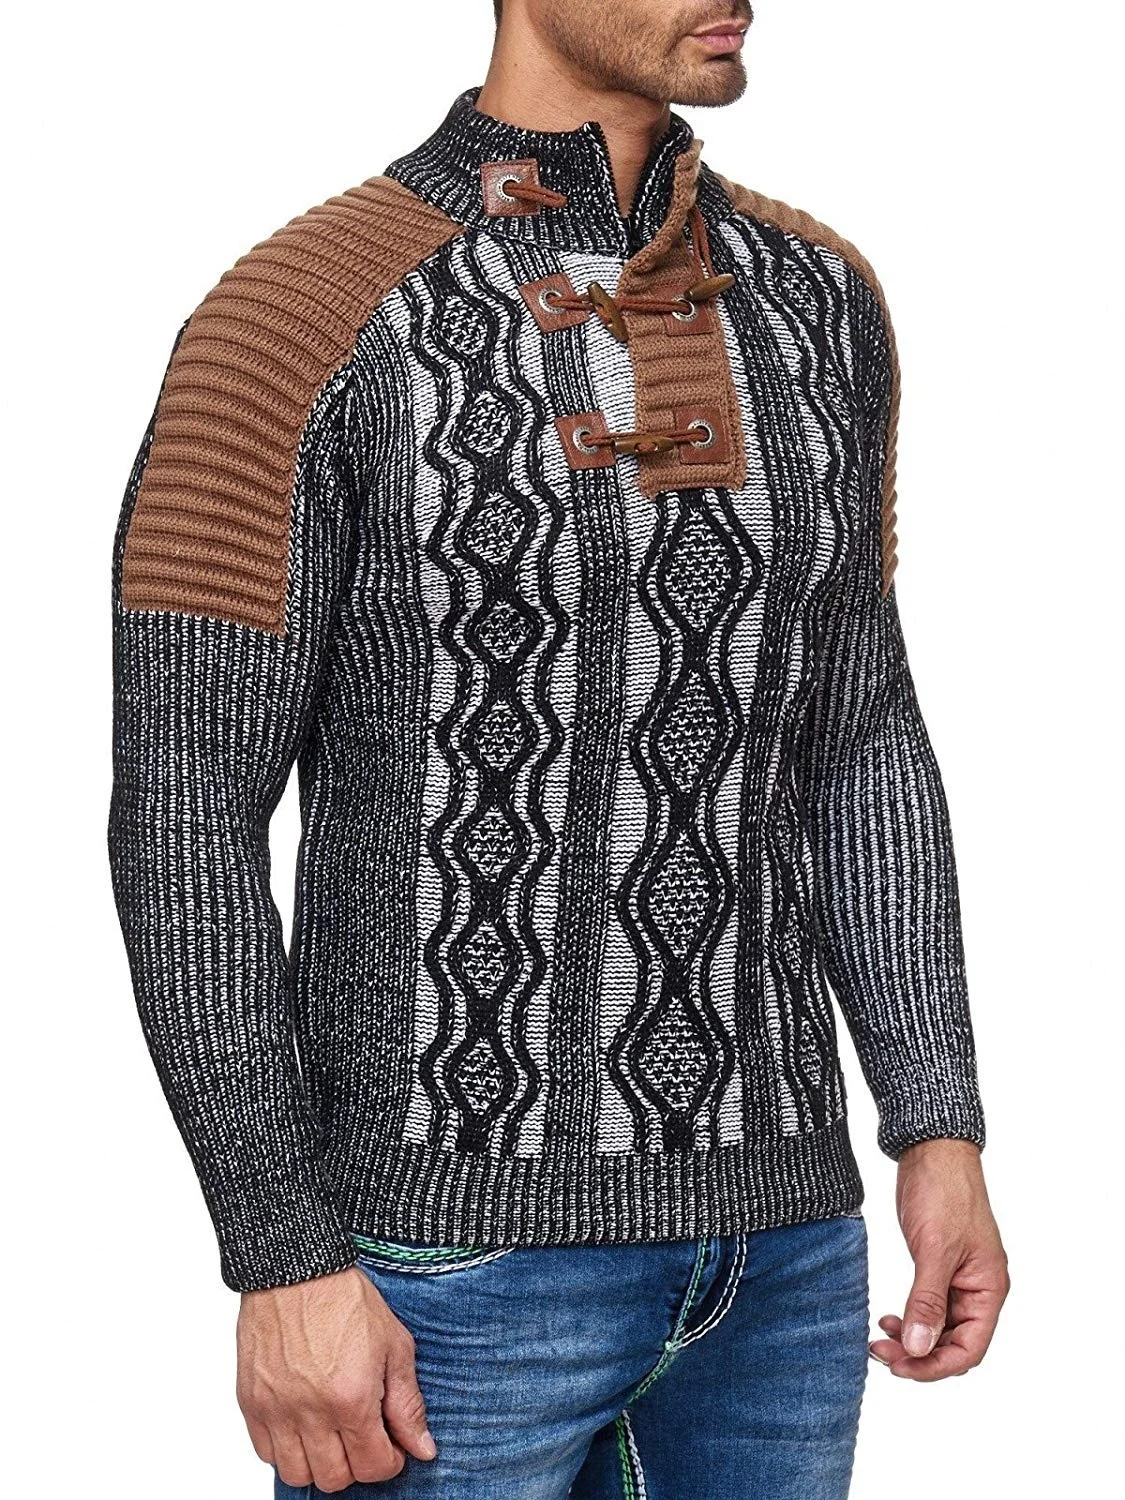 Мужской свитер вязаный шаль свитер с высоким воротом Пуловер Зимний хип хоп Уличная Высокое качество длинный рукав мужские свитера